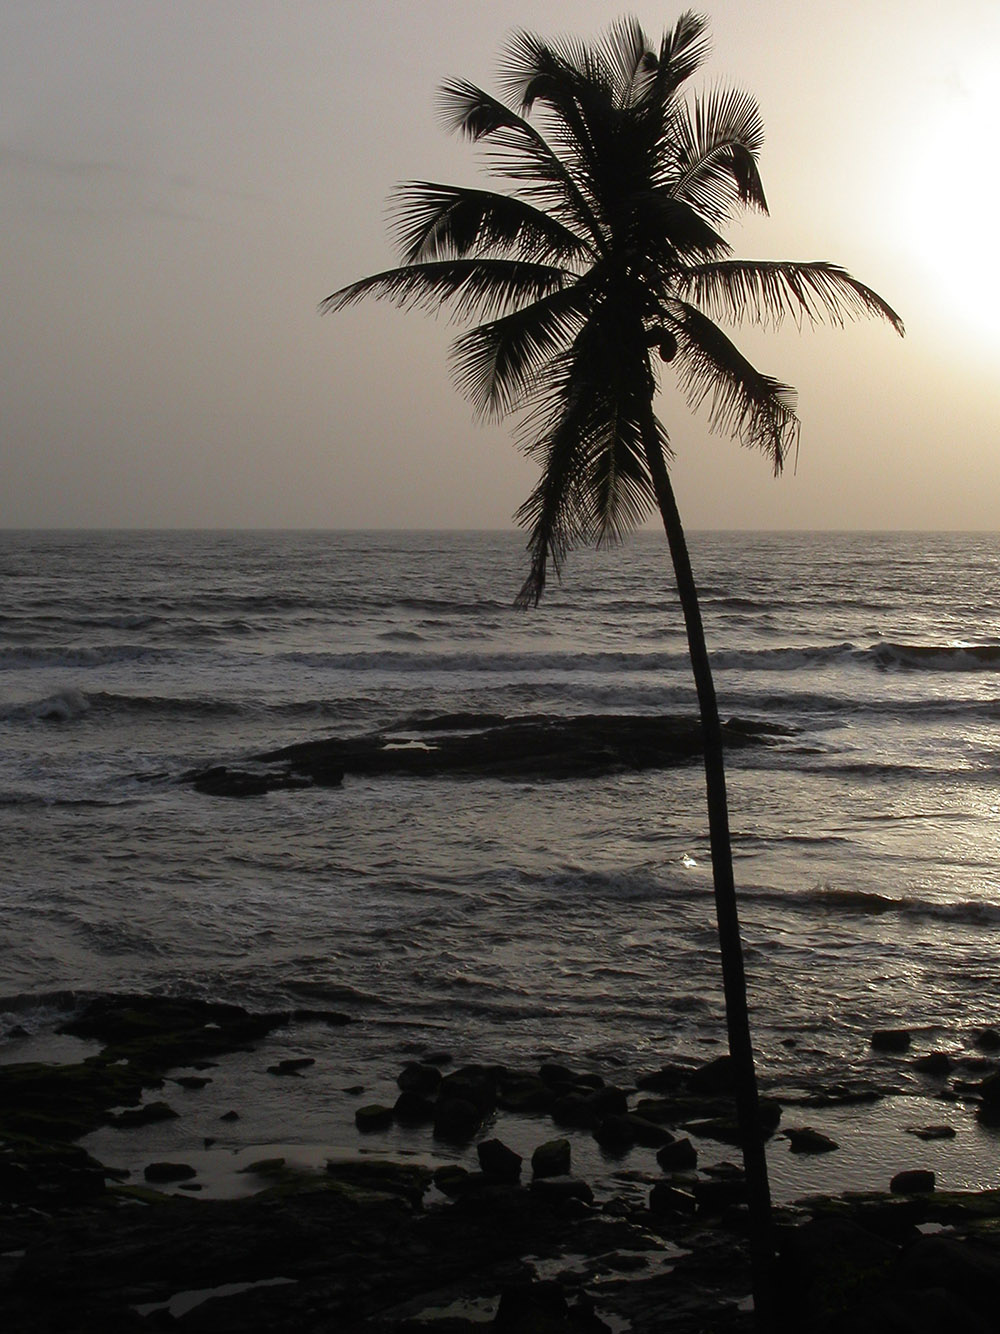 india/goa_palm_sunset_silhouette